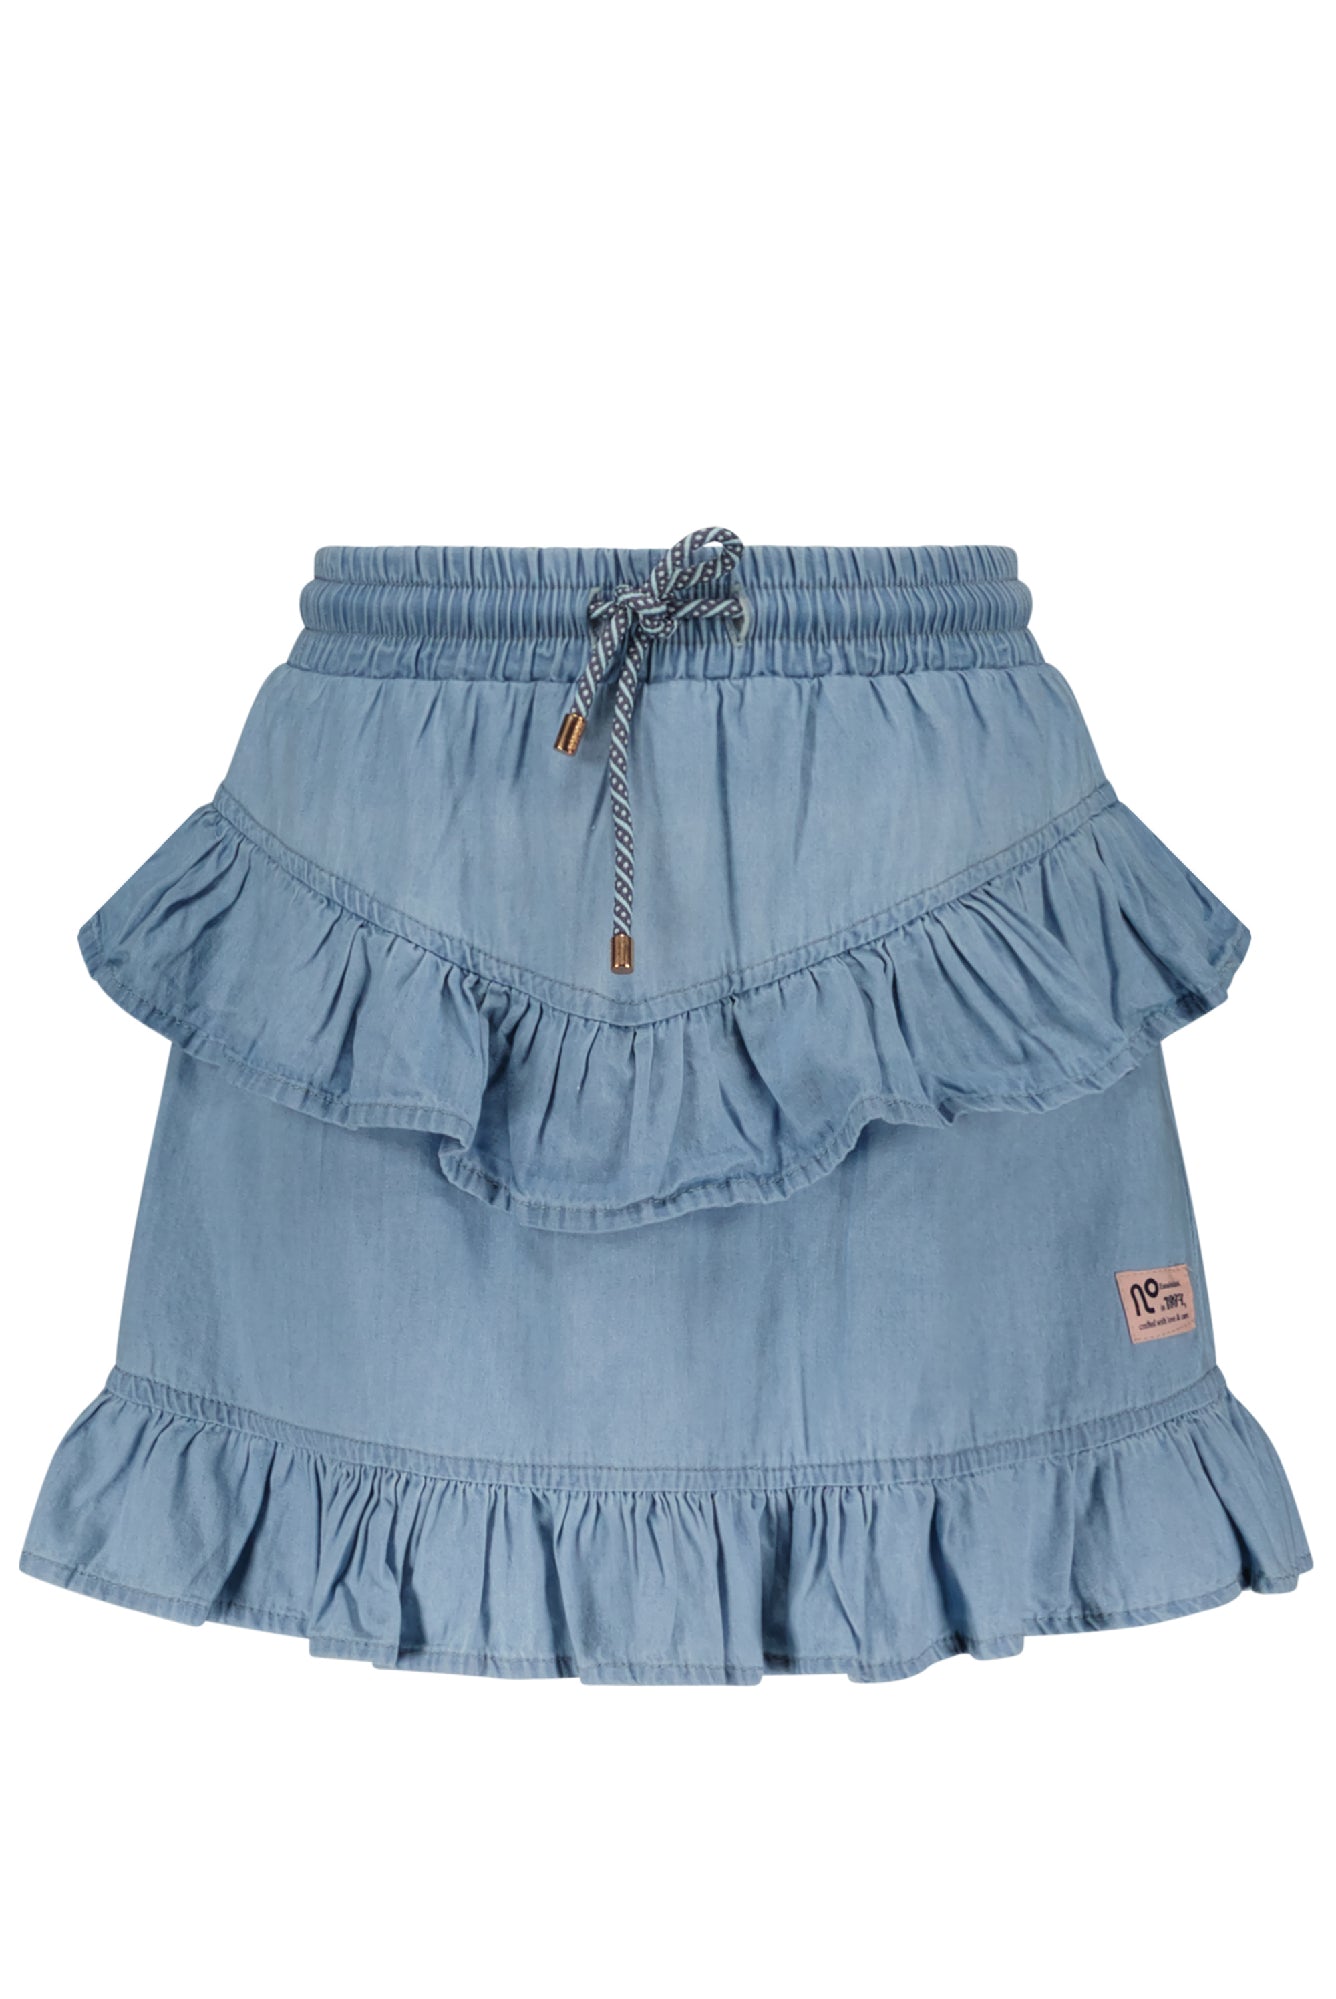 Meisjes Neva short light weight denim skirt with pants lining van NoNo in de kleur Jeans in maat 134-140.